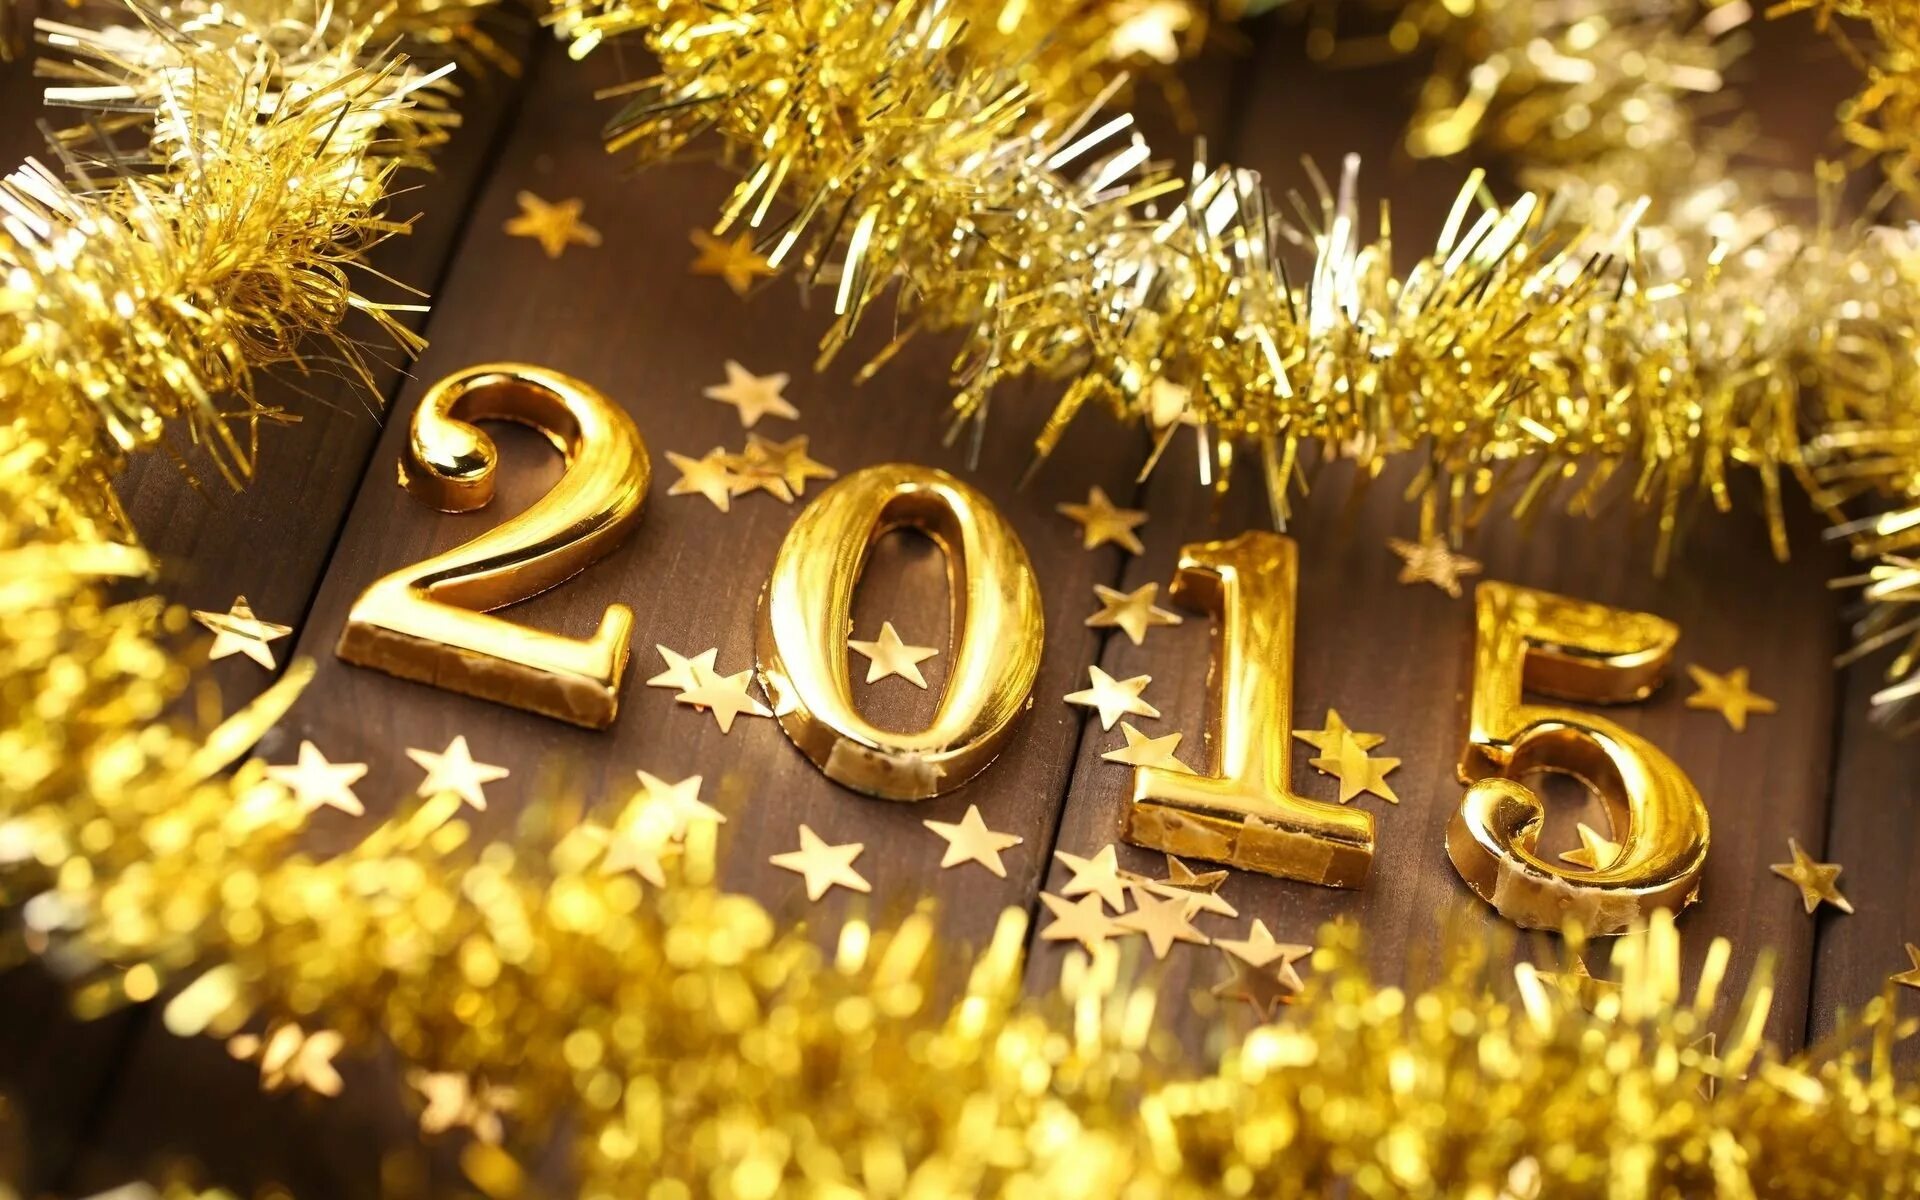 Фото 2015 года. С новым годом. Новый год 2015. Открытки новый год 2015. Новый год 2015 картинки.